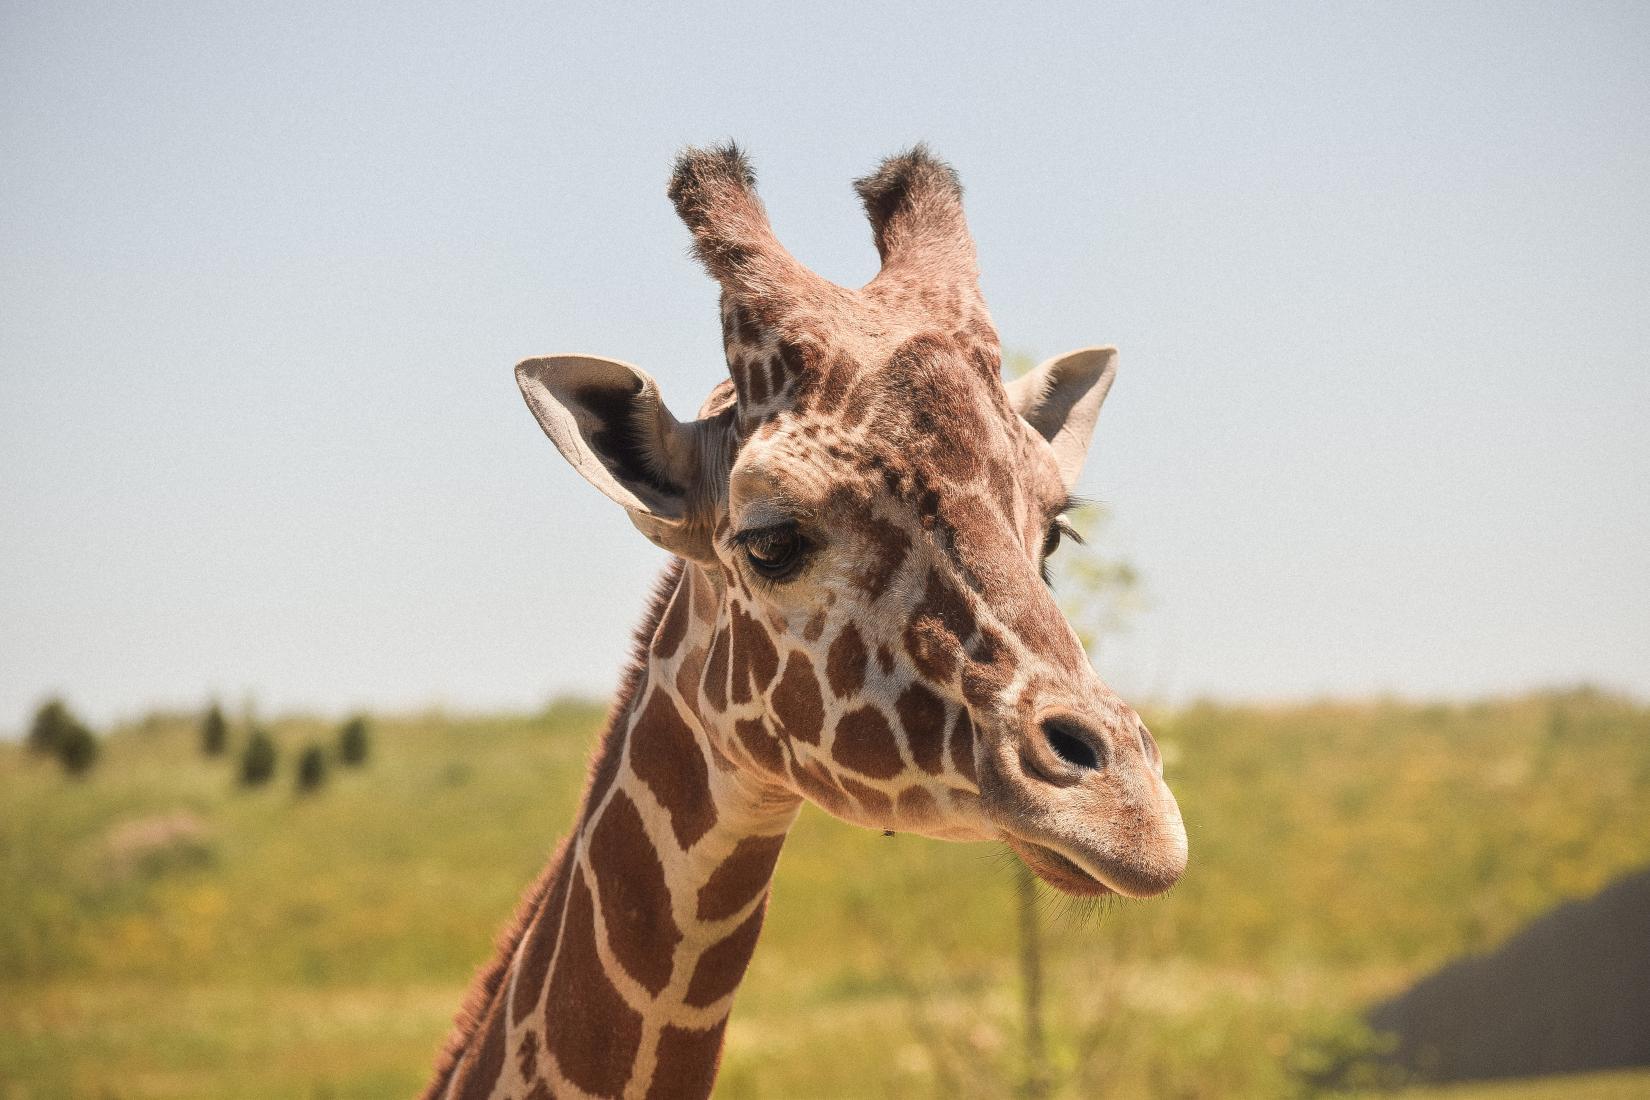 Estima-se que existam atualmente apenas cerca de 600 girafas da África Ocidental em estado selvagem.